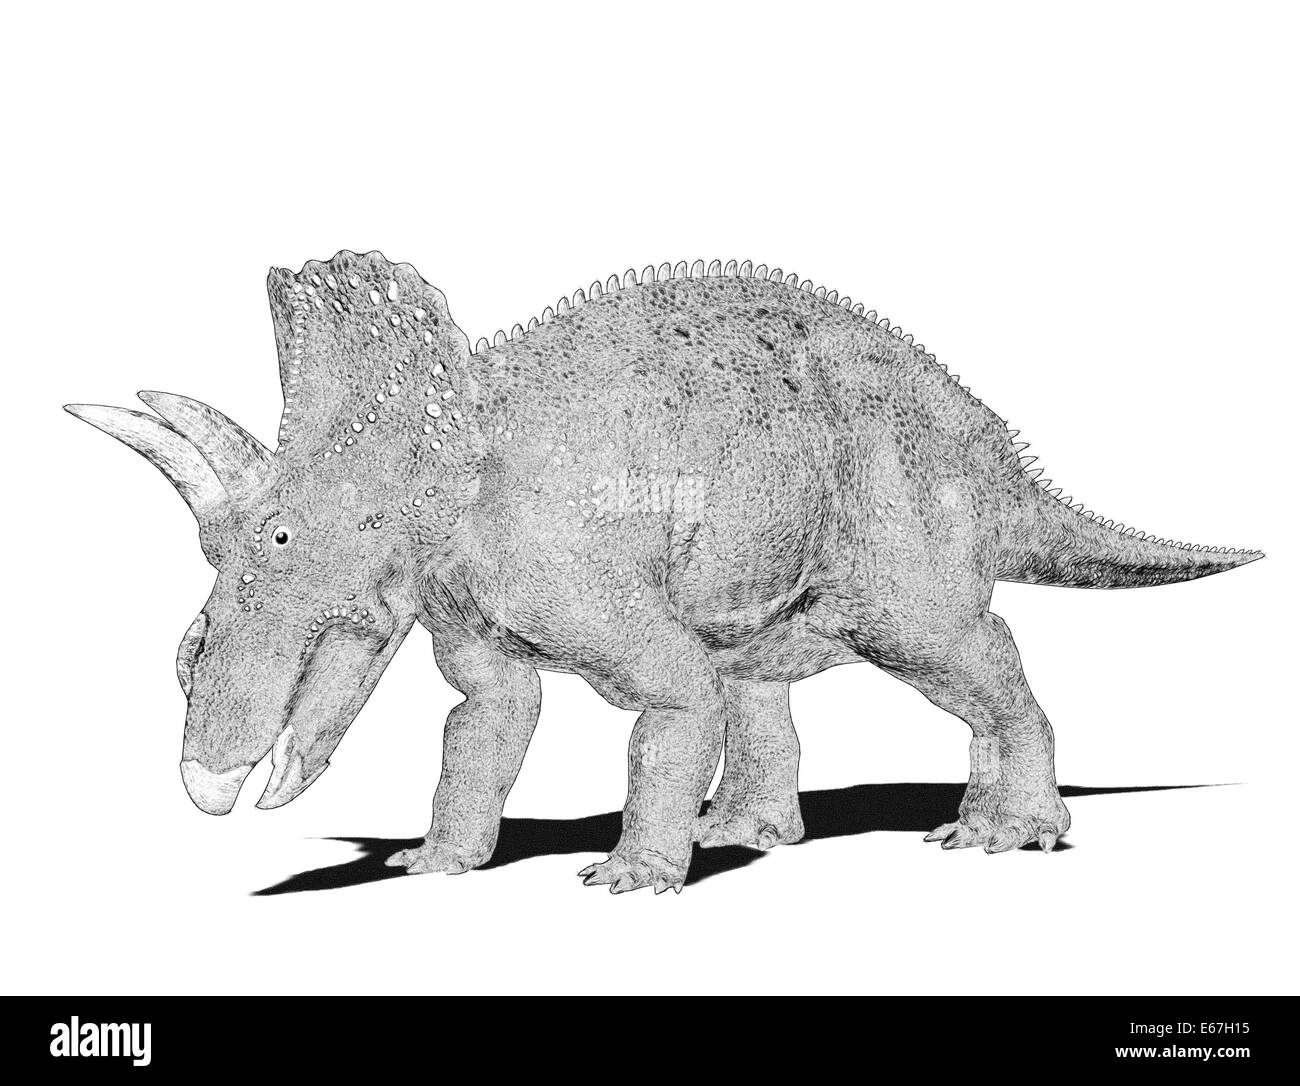 Dinosaurier Nedoceratops / dinosaur Nedoceratops Stock Photo